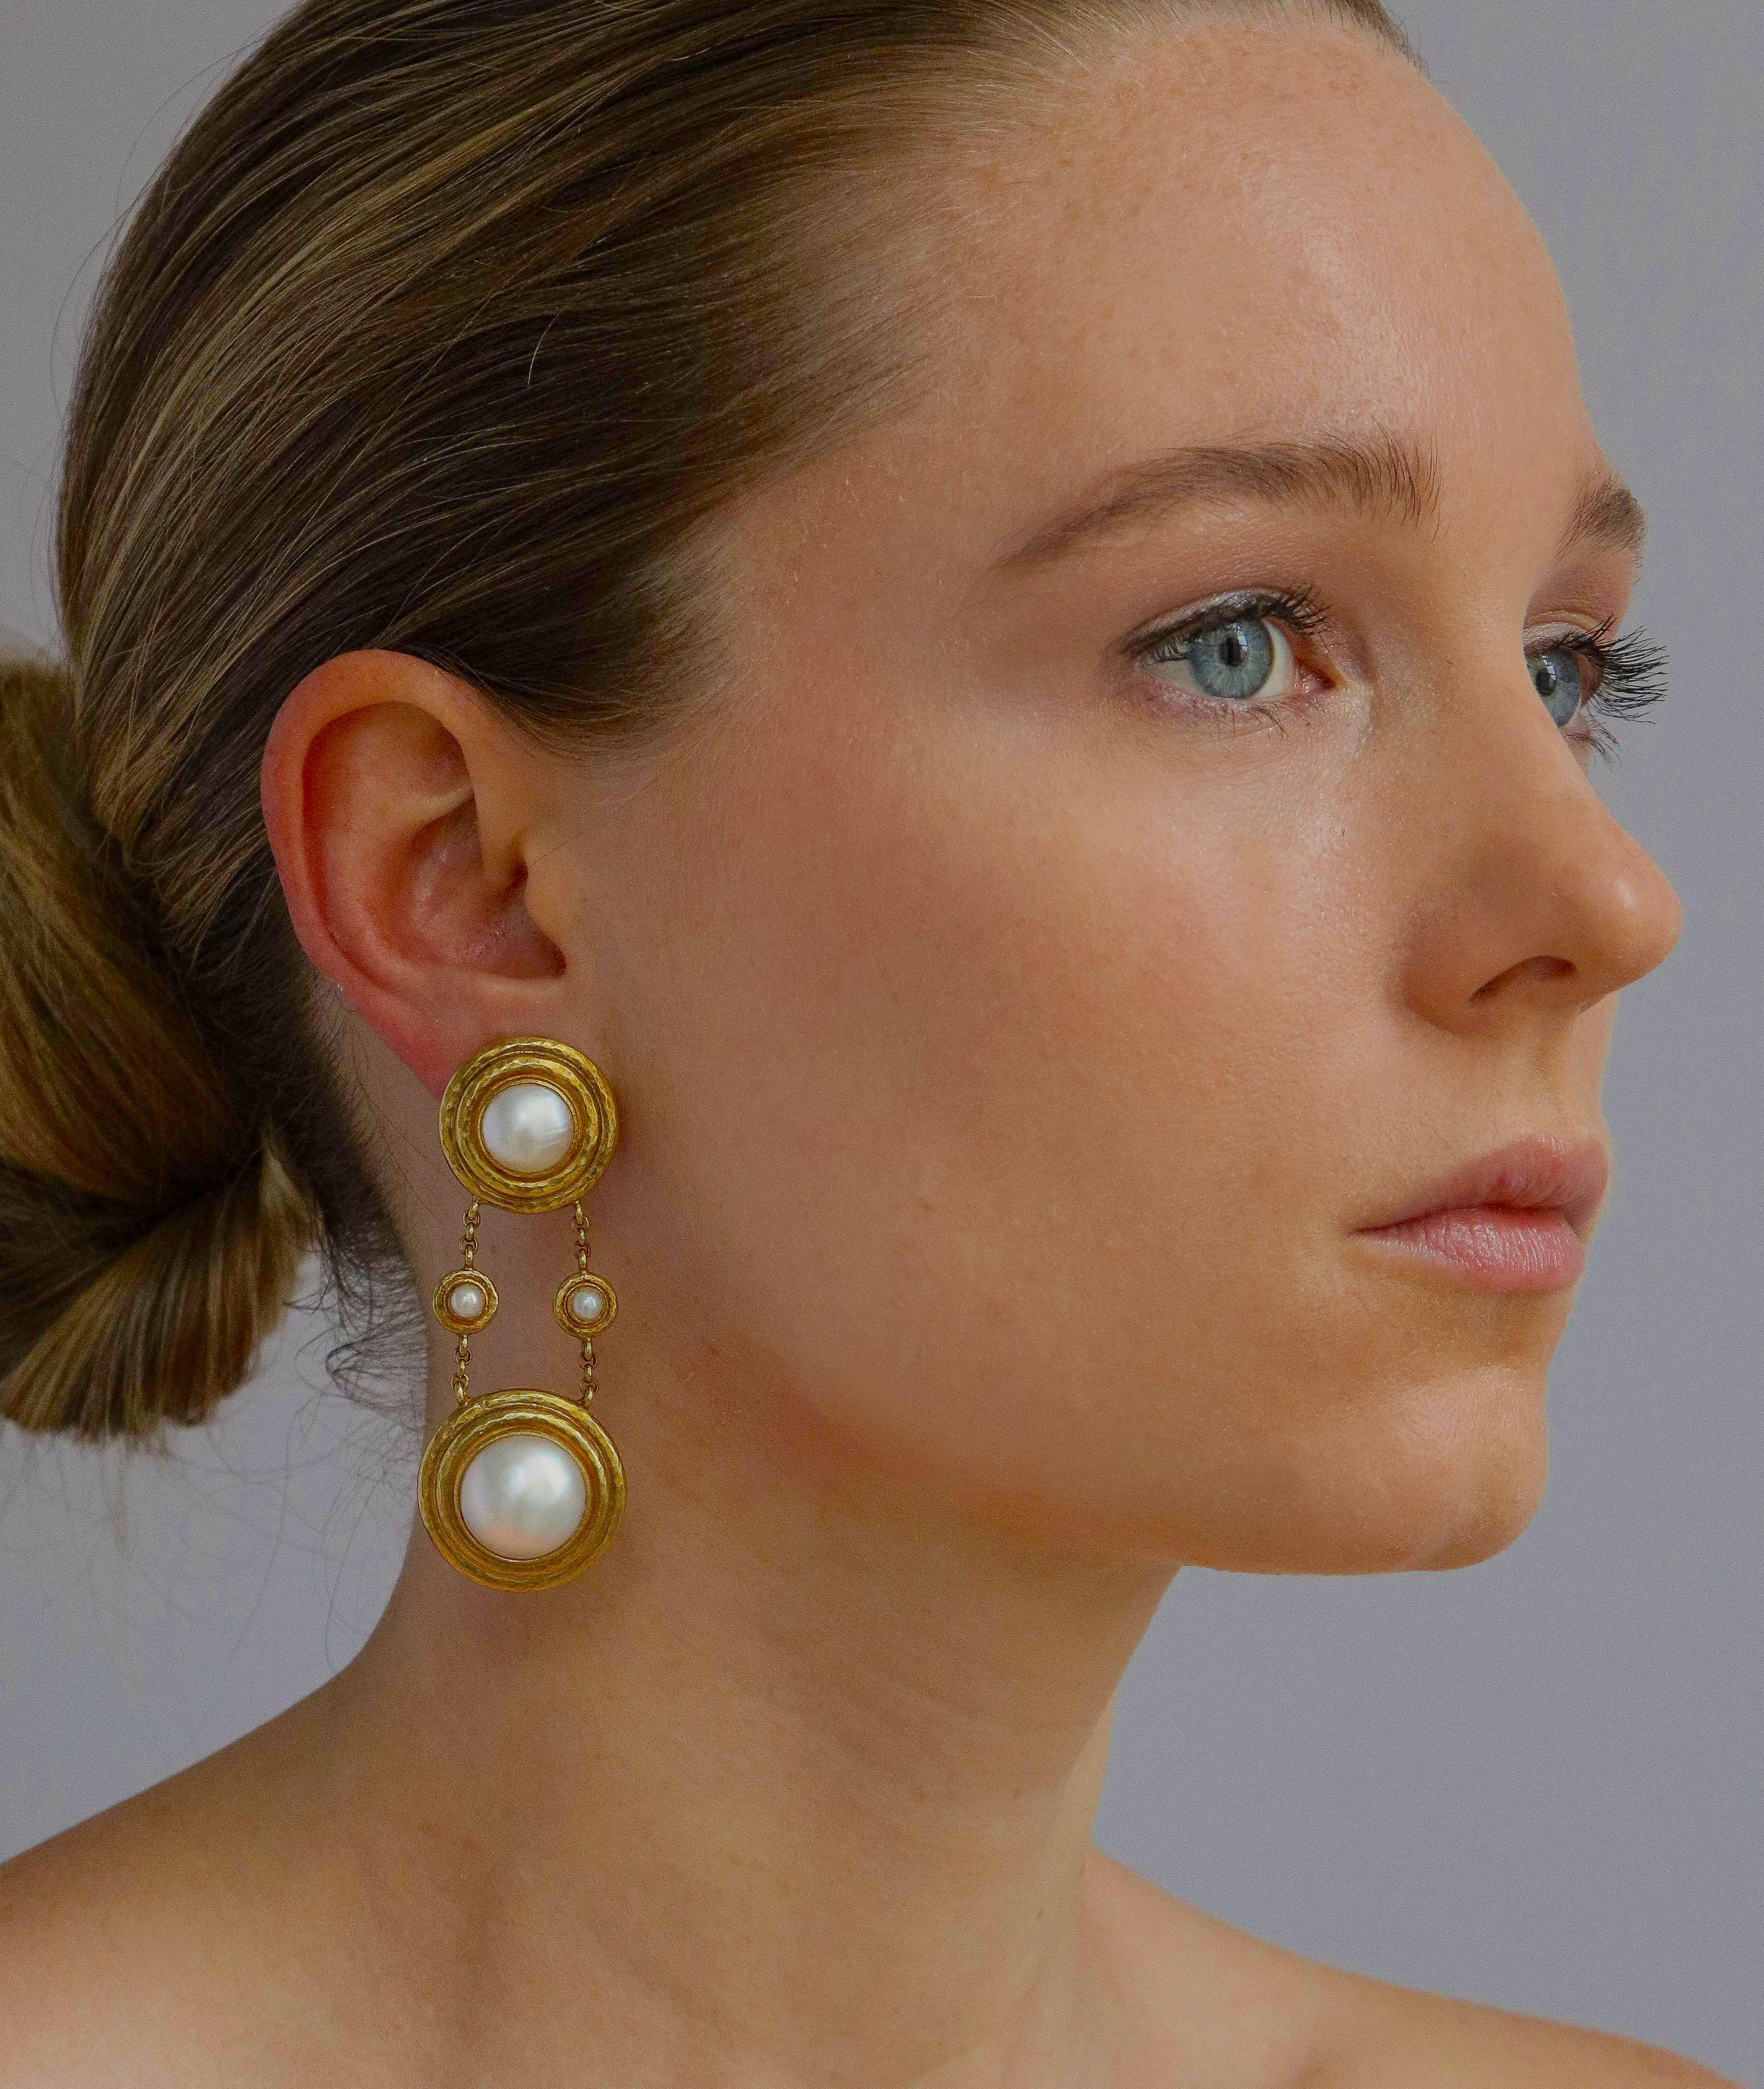 Elegante und modisch lange Elizabeth Locke Ohrclips aus 18-karätigem Gold, besetzt mit schimmernden Mabe-Perlen, die sowohl jugendlich als auch raffiniert sind, mit einem klappbaren Stift für eine zusätzliche Durchbohrungsoption. Die obere Perle